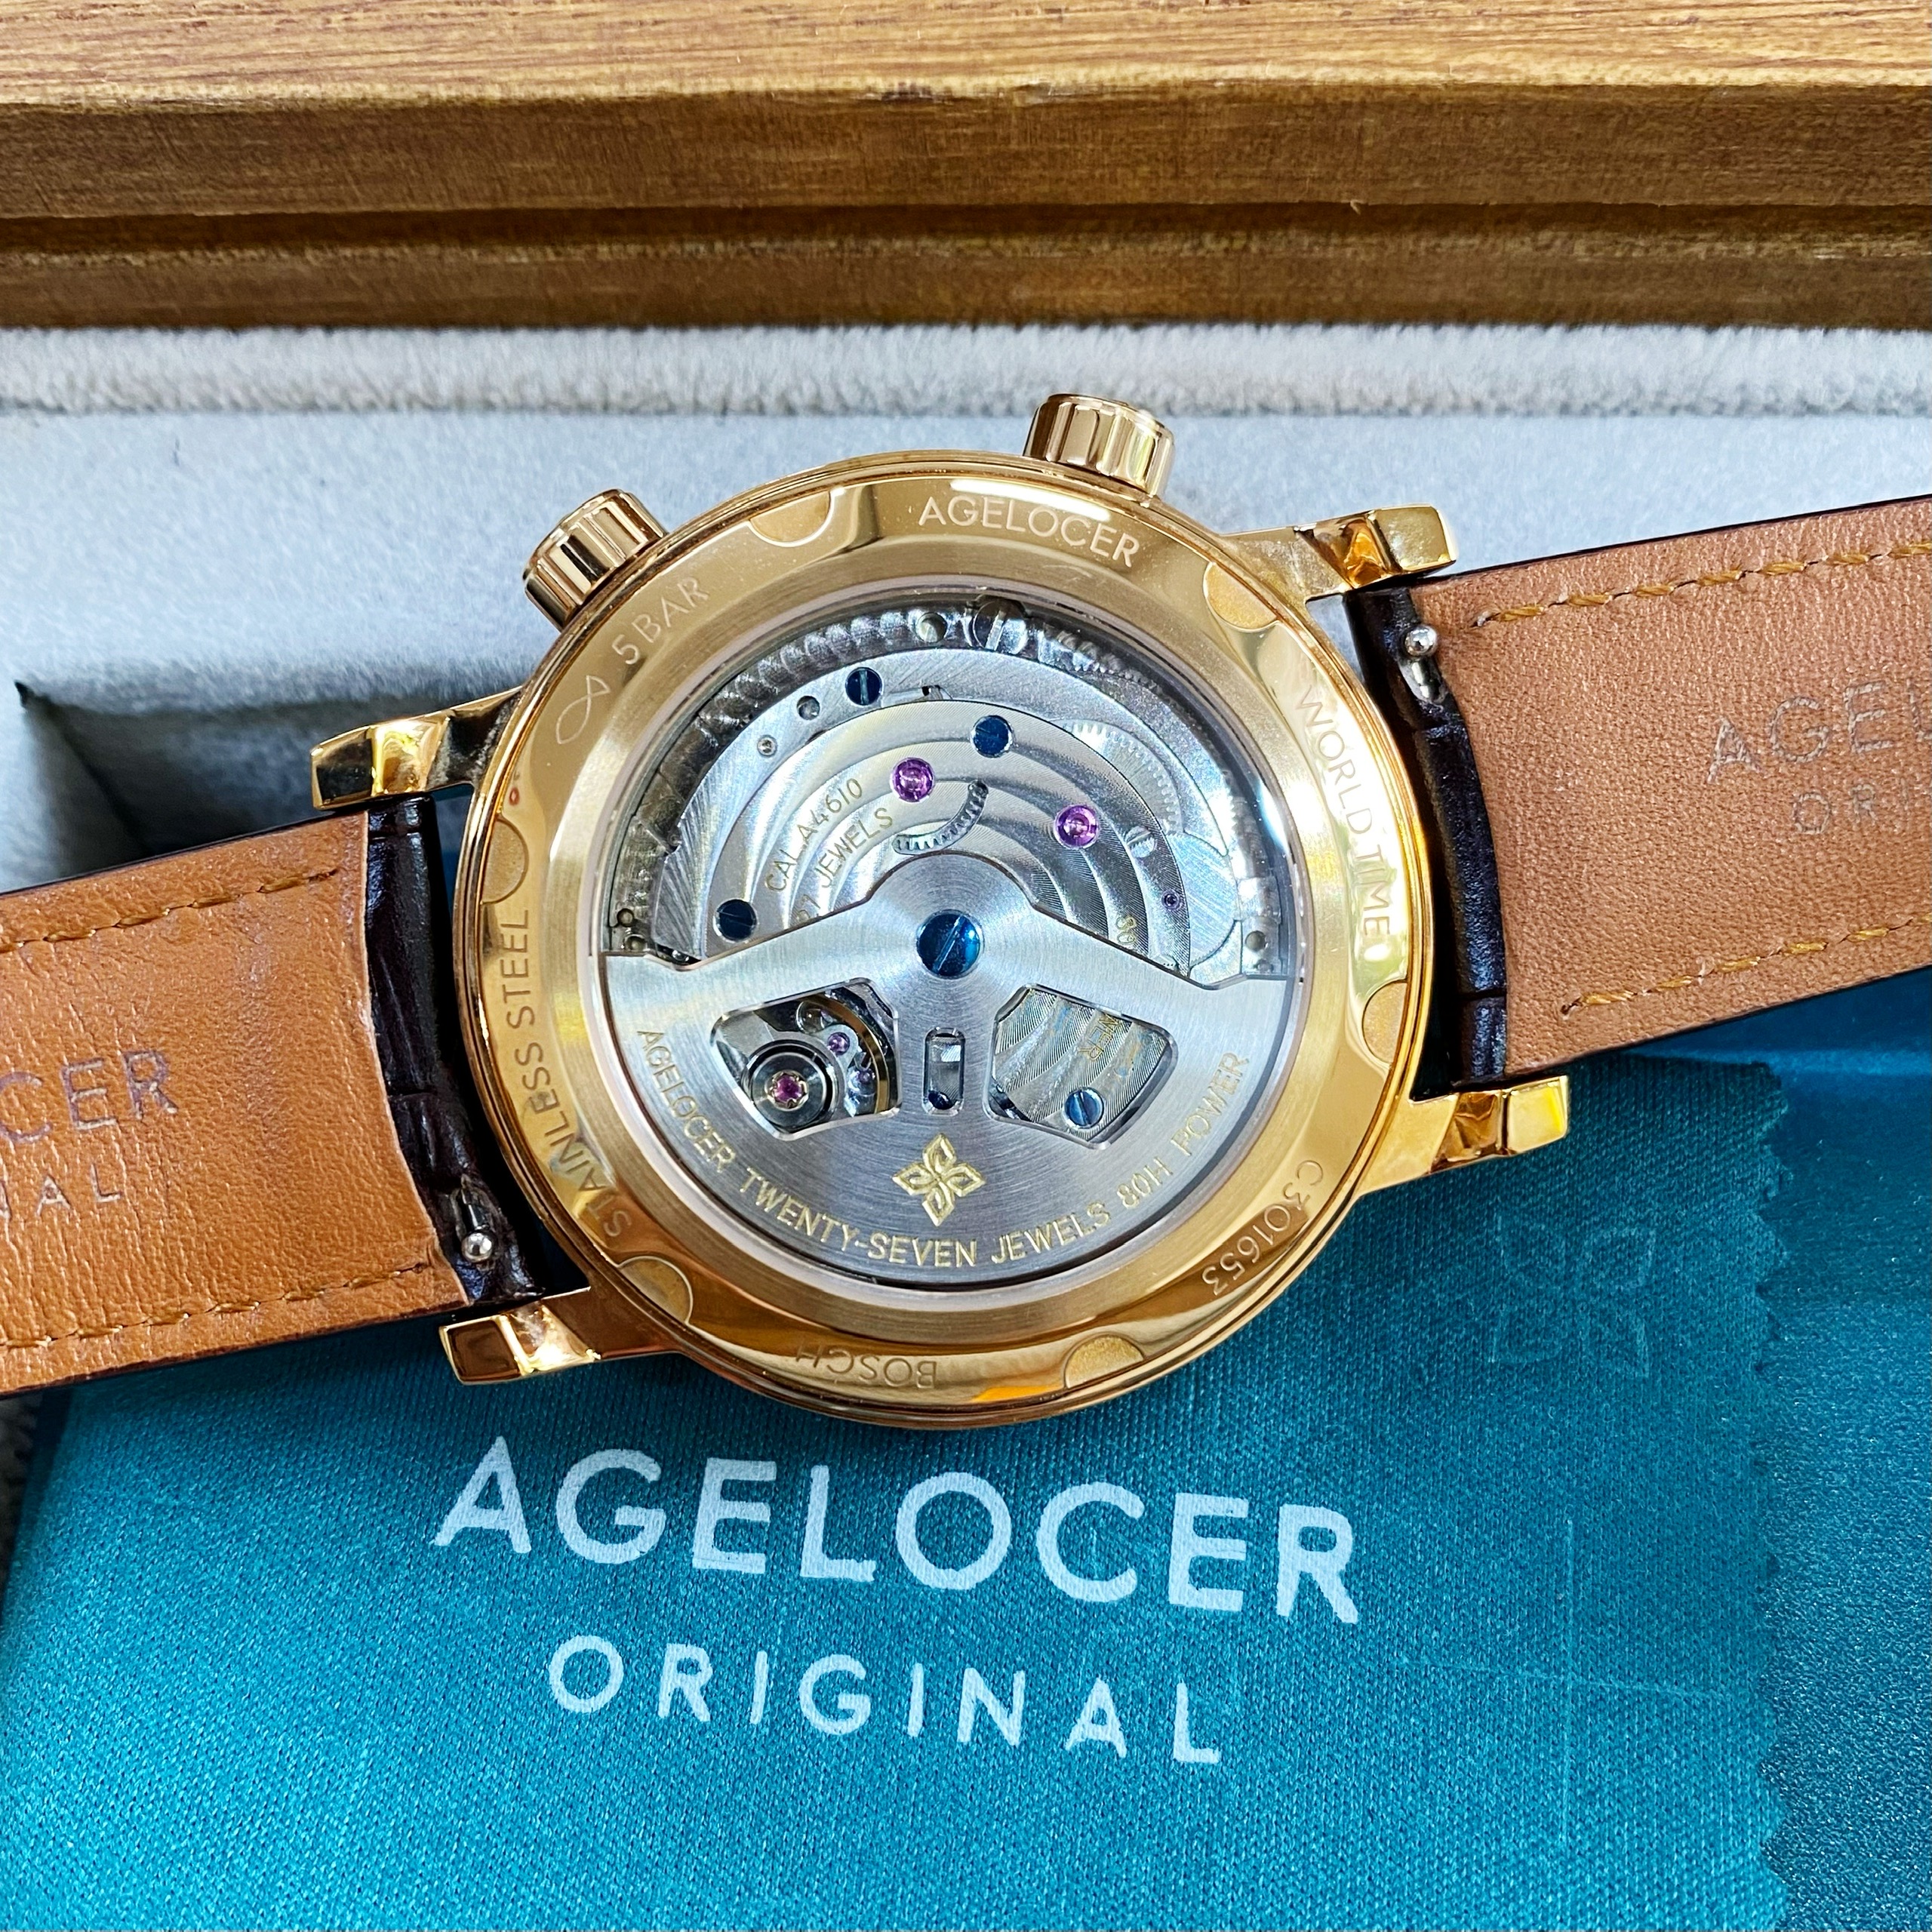 Đồng Hồ Agelocer World Time 5201D2 - Đi du lịch vòng quanh thế giới với chiếc Agelocer World Time trên cổ tay của anh em